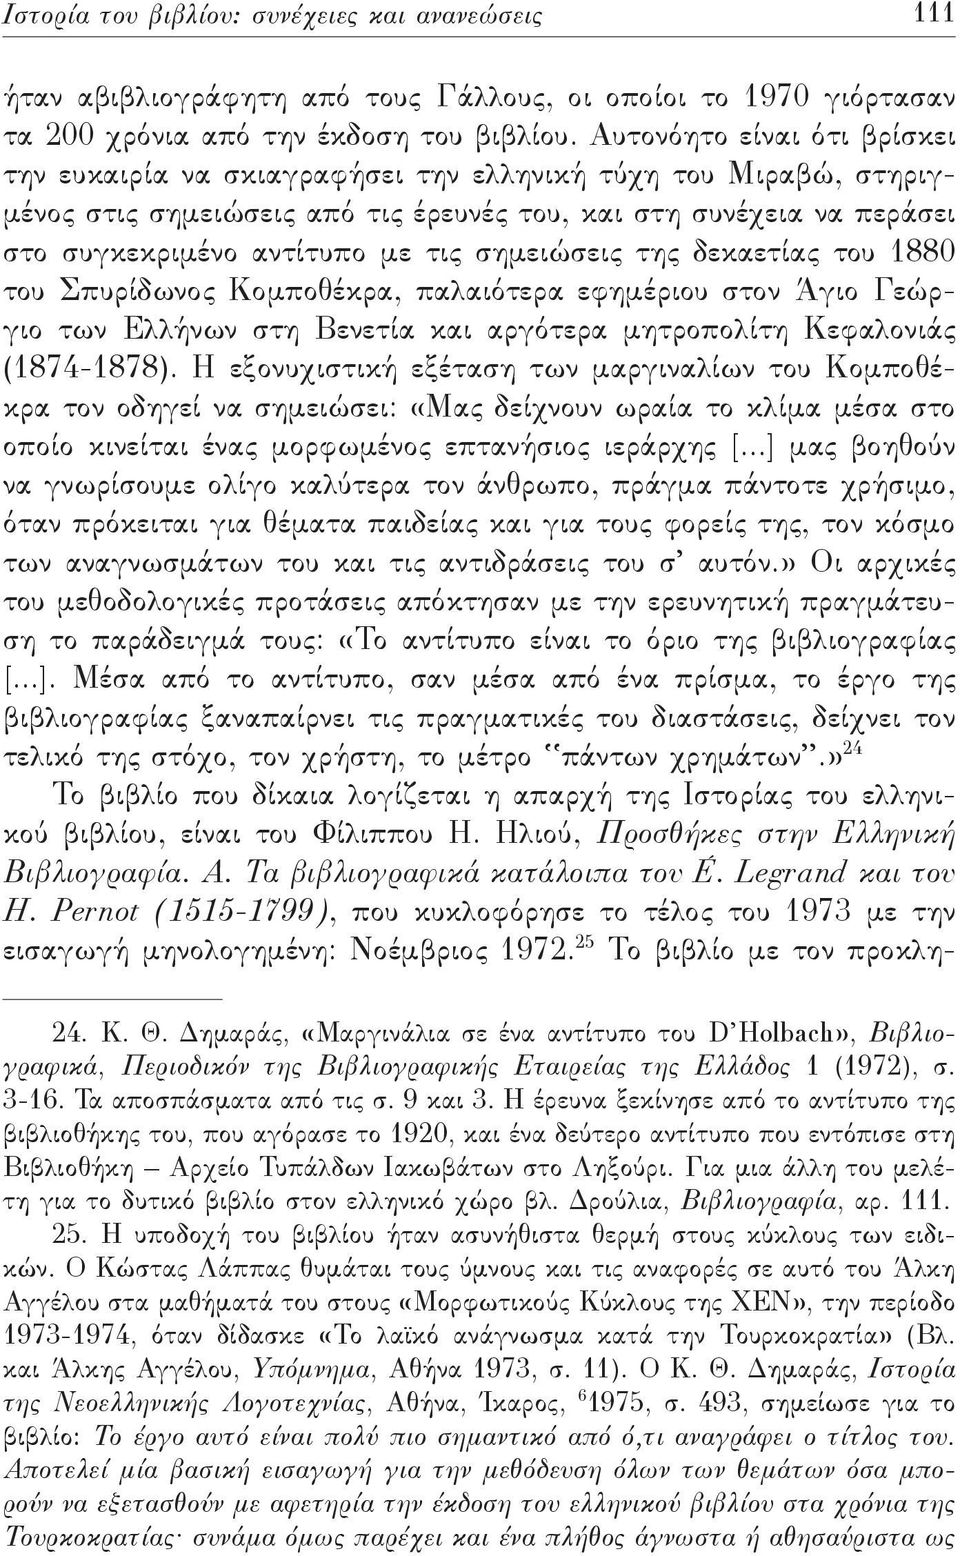 σημειώσεις της δεκαετίας του 1880 του Σπυρίδωνος Κομποθέκρα, παλαιότερα εφημέριου στον Άγιο Γεώργιο των Ελλήνων στη Βενετία και αργότερα μητροπολίτη Κεφαλονιάς (1874-1878).